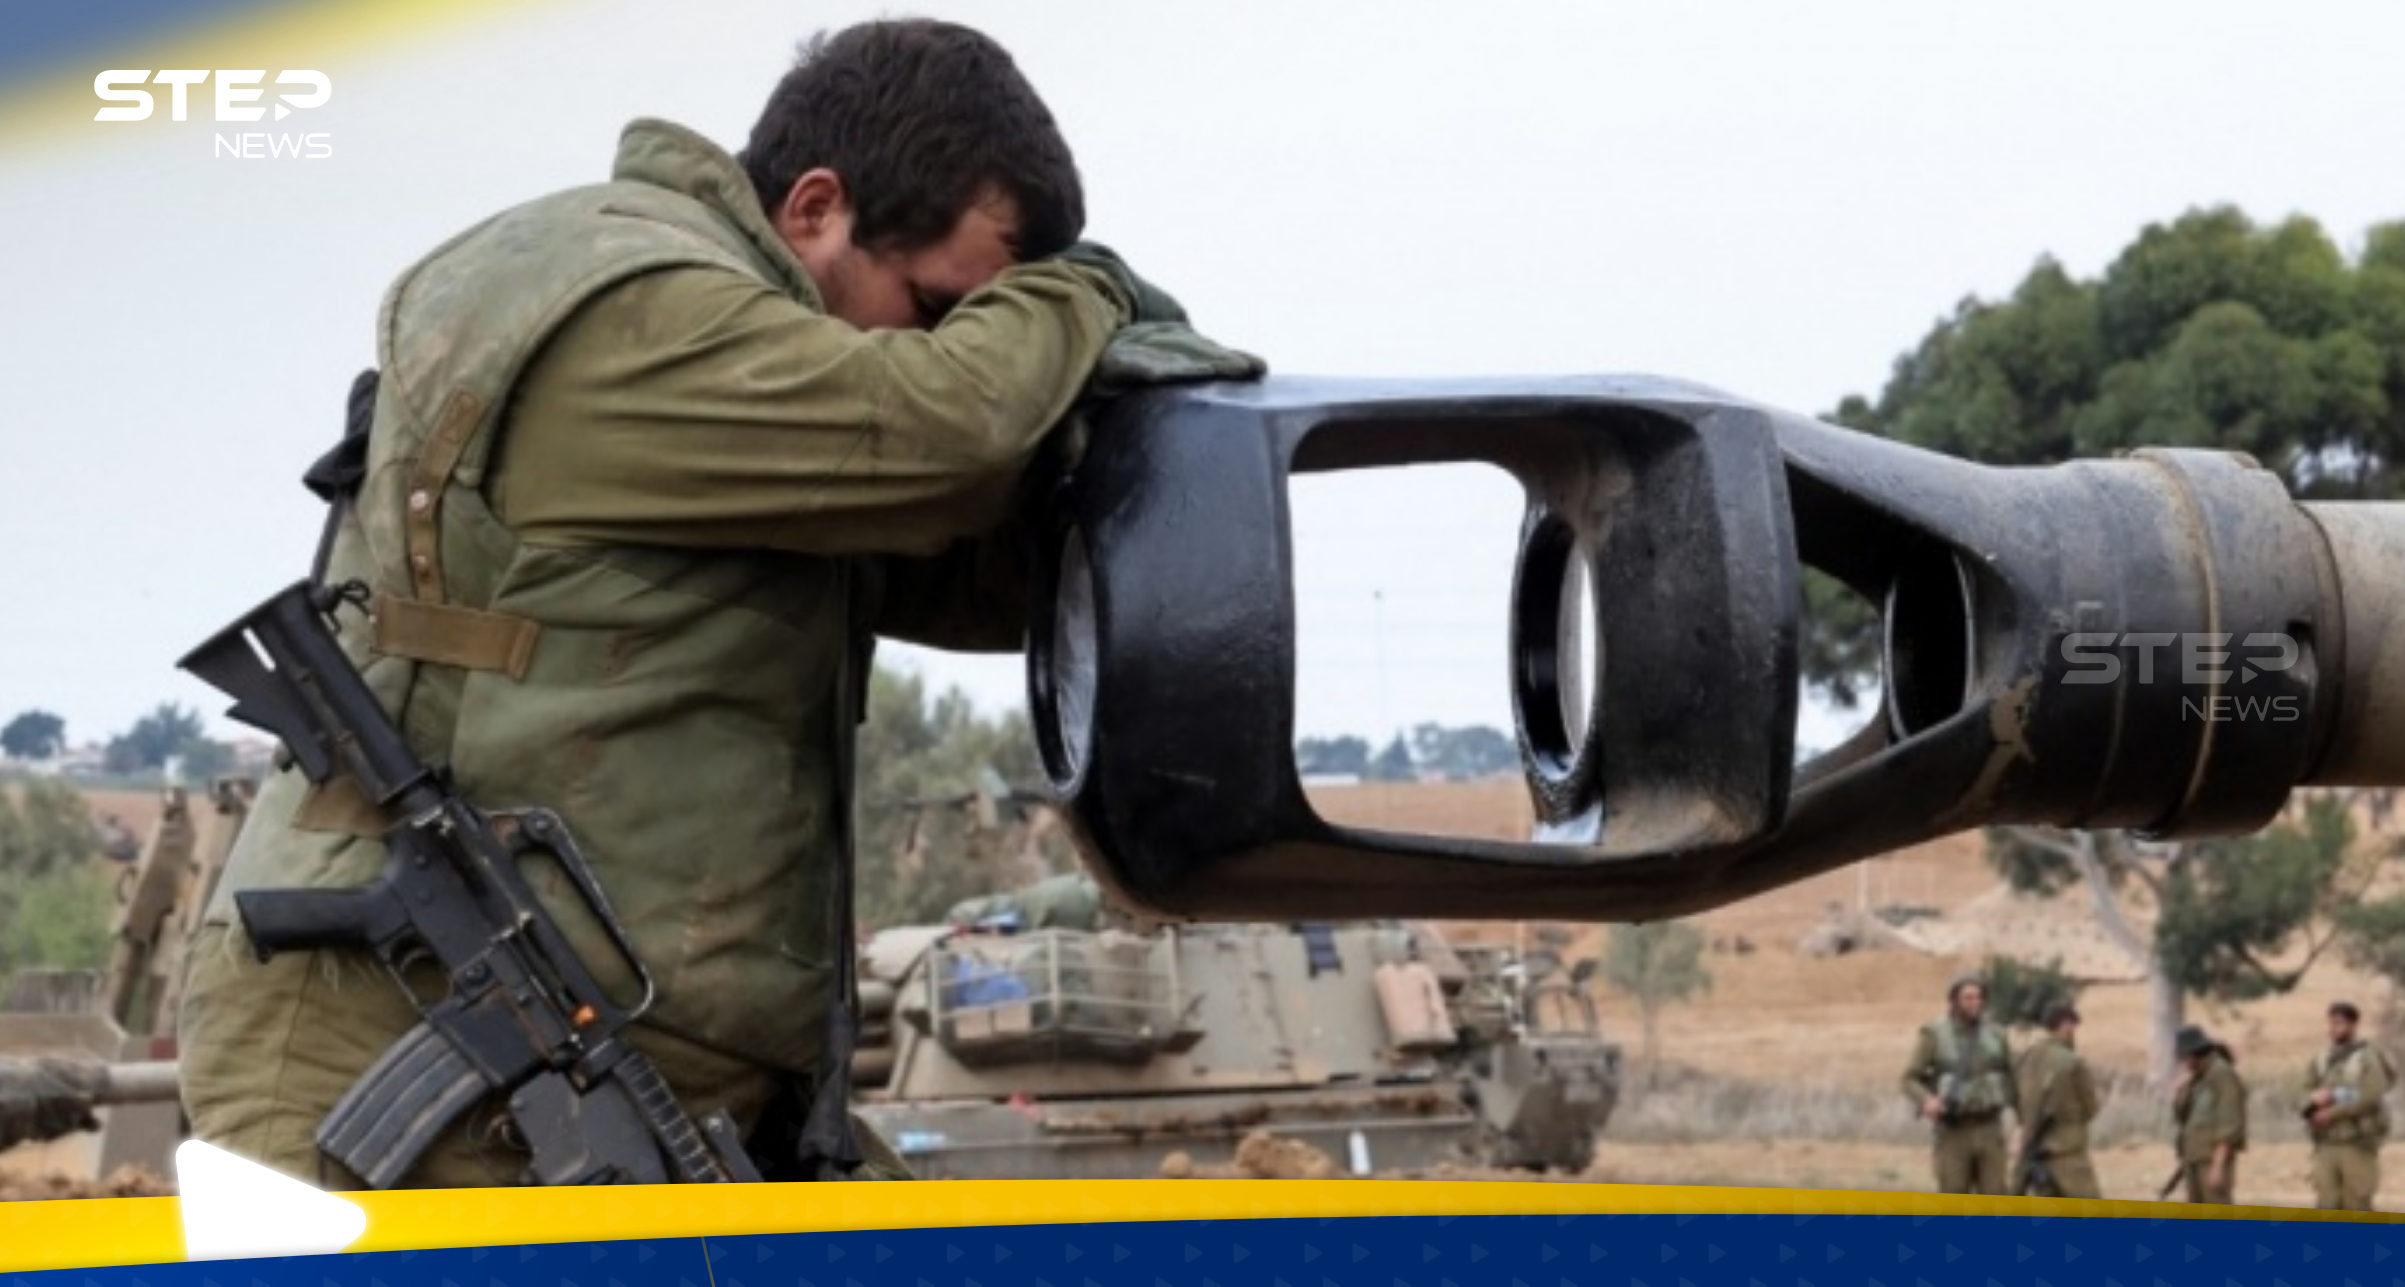 الجيش الإسرائيلي يعترف بتقلي لواء جفعاتي "ضربة قاسية" اللية الماضية بغزة